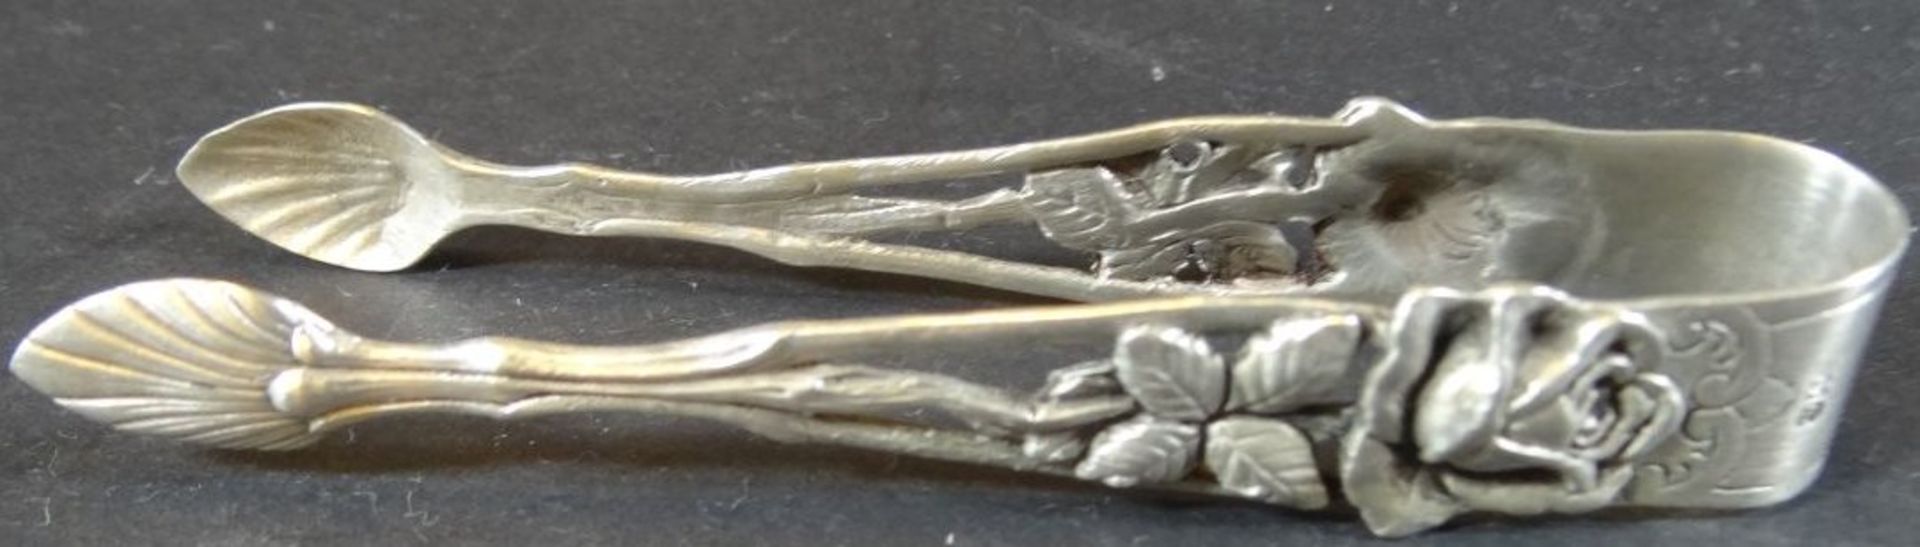 7x Teile  Silber-800-, Rosendekor, Zuckerlöffel und Zange, Moccalöffel , gr. Zuckerzange, Sahnelöff - Bild 5 aus 13